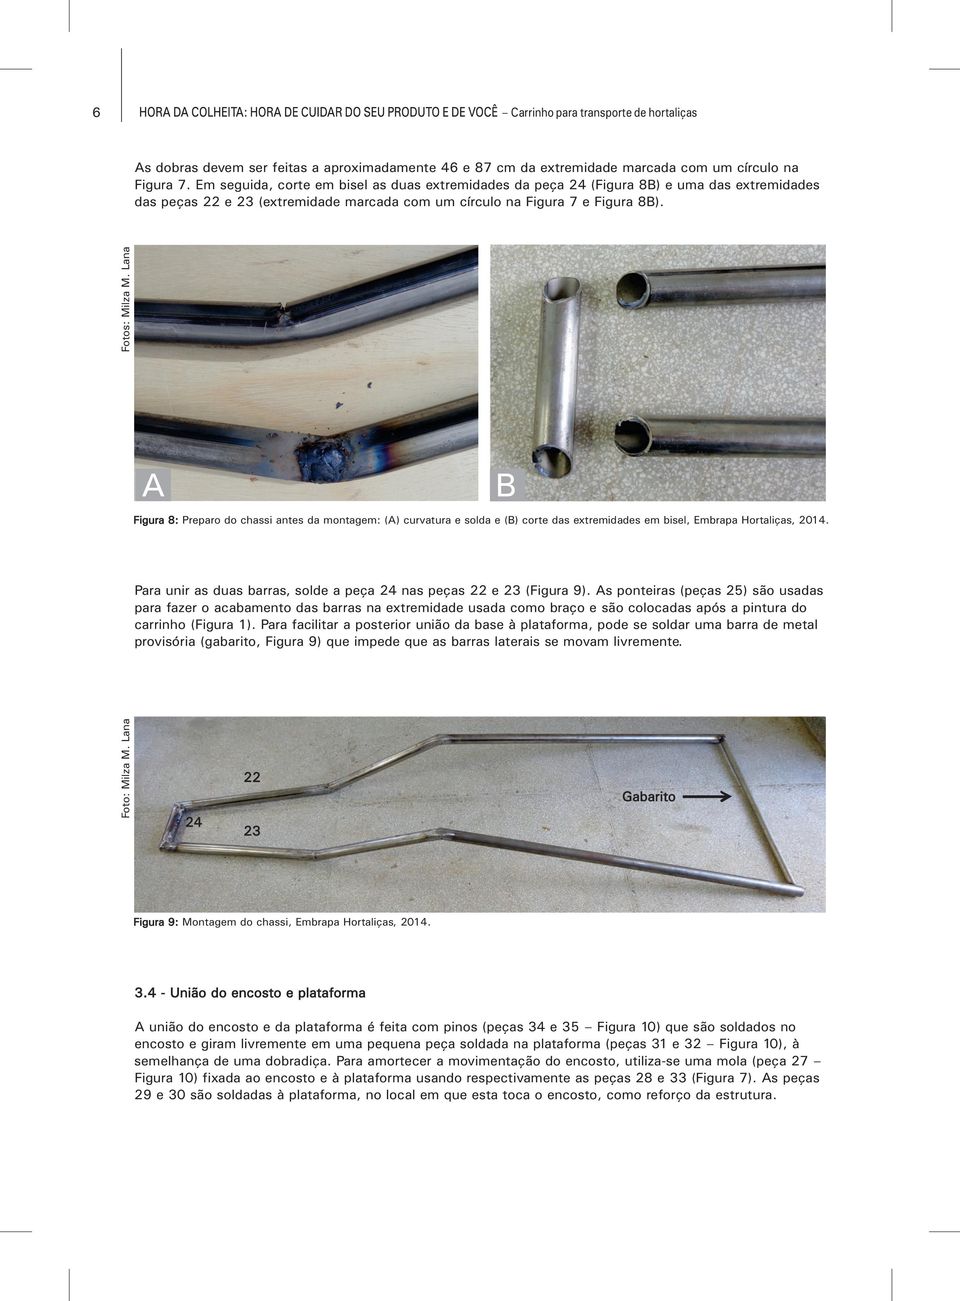 Figura 8: Preparo do chassi antes da montagem: () curvatura e solda e () corte das extremidades em bisel, Embrapa Hortaliças, 2014.